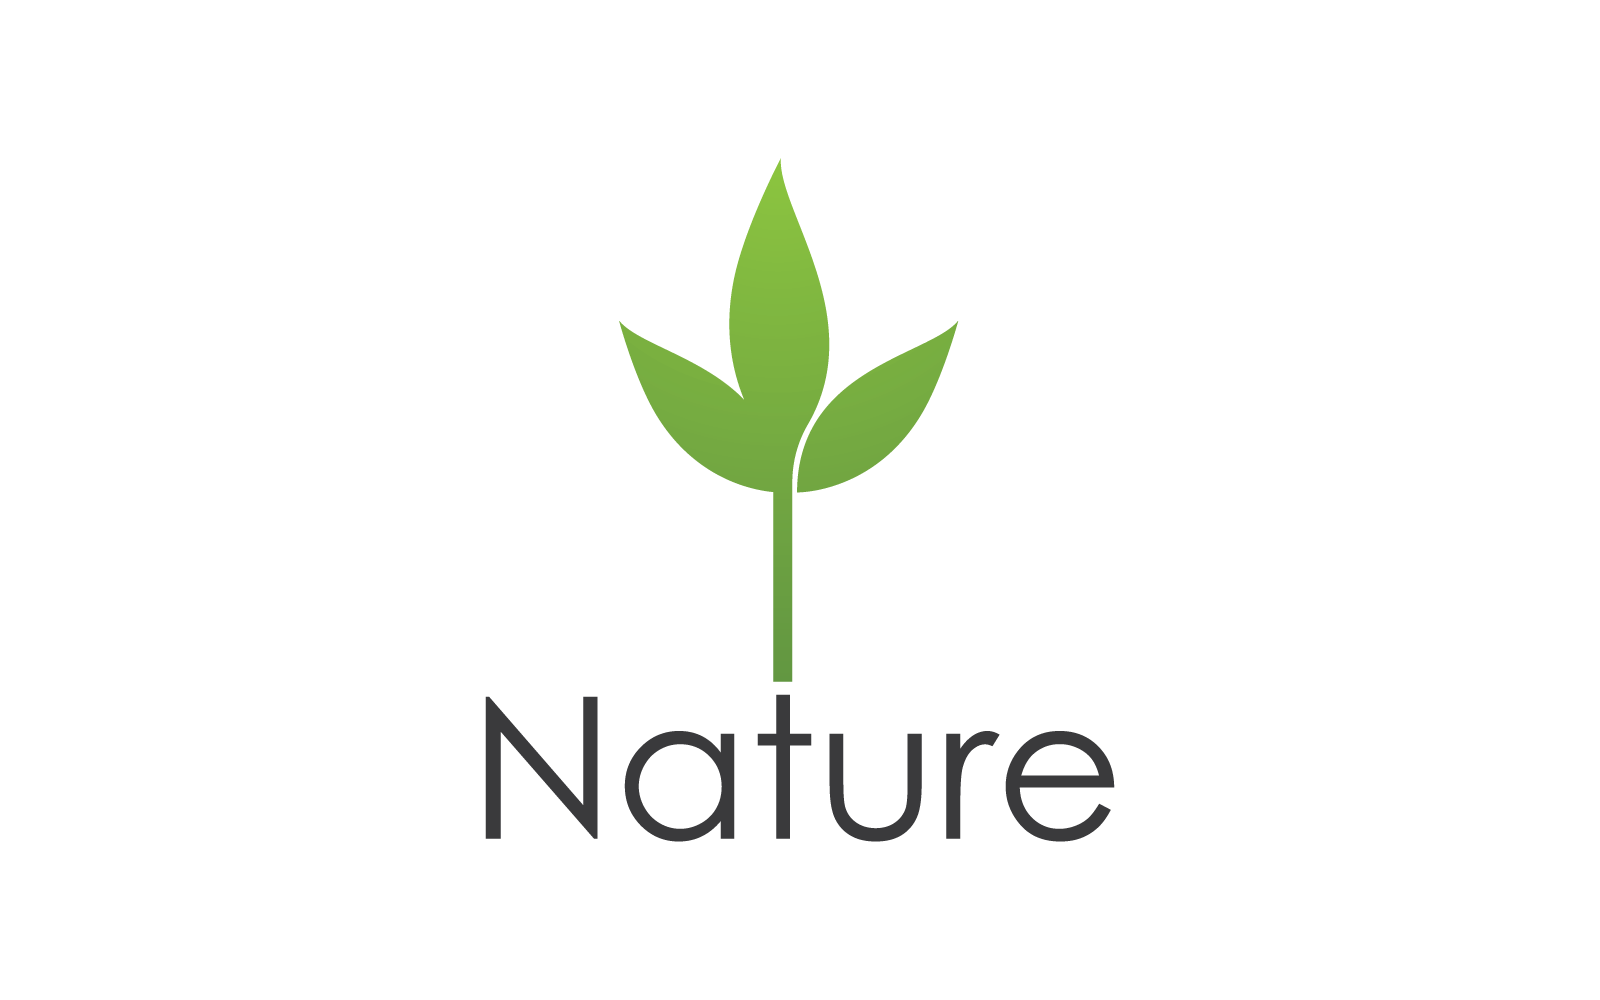 Eco green leaf illustration nature logo design Logo Template